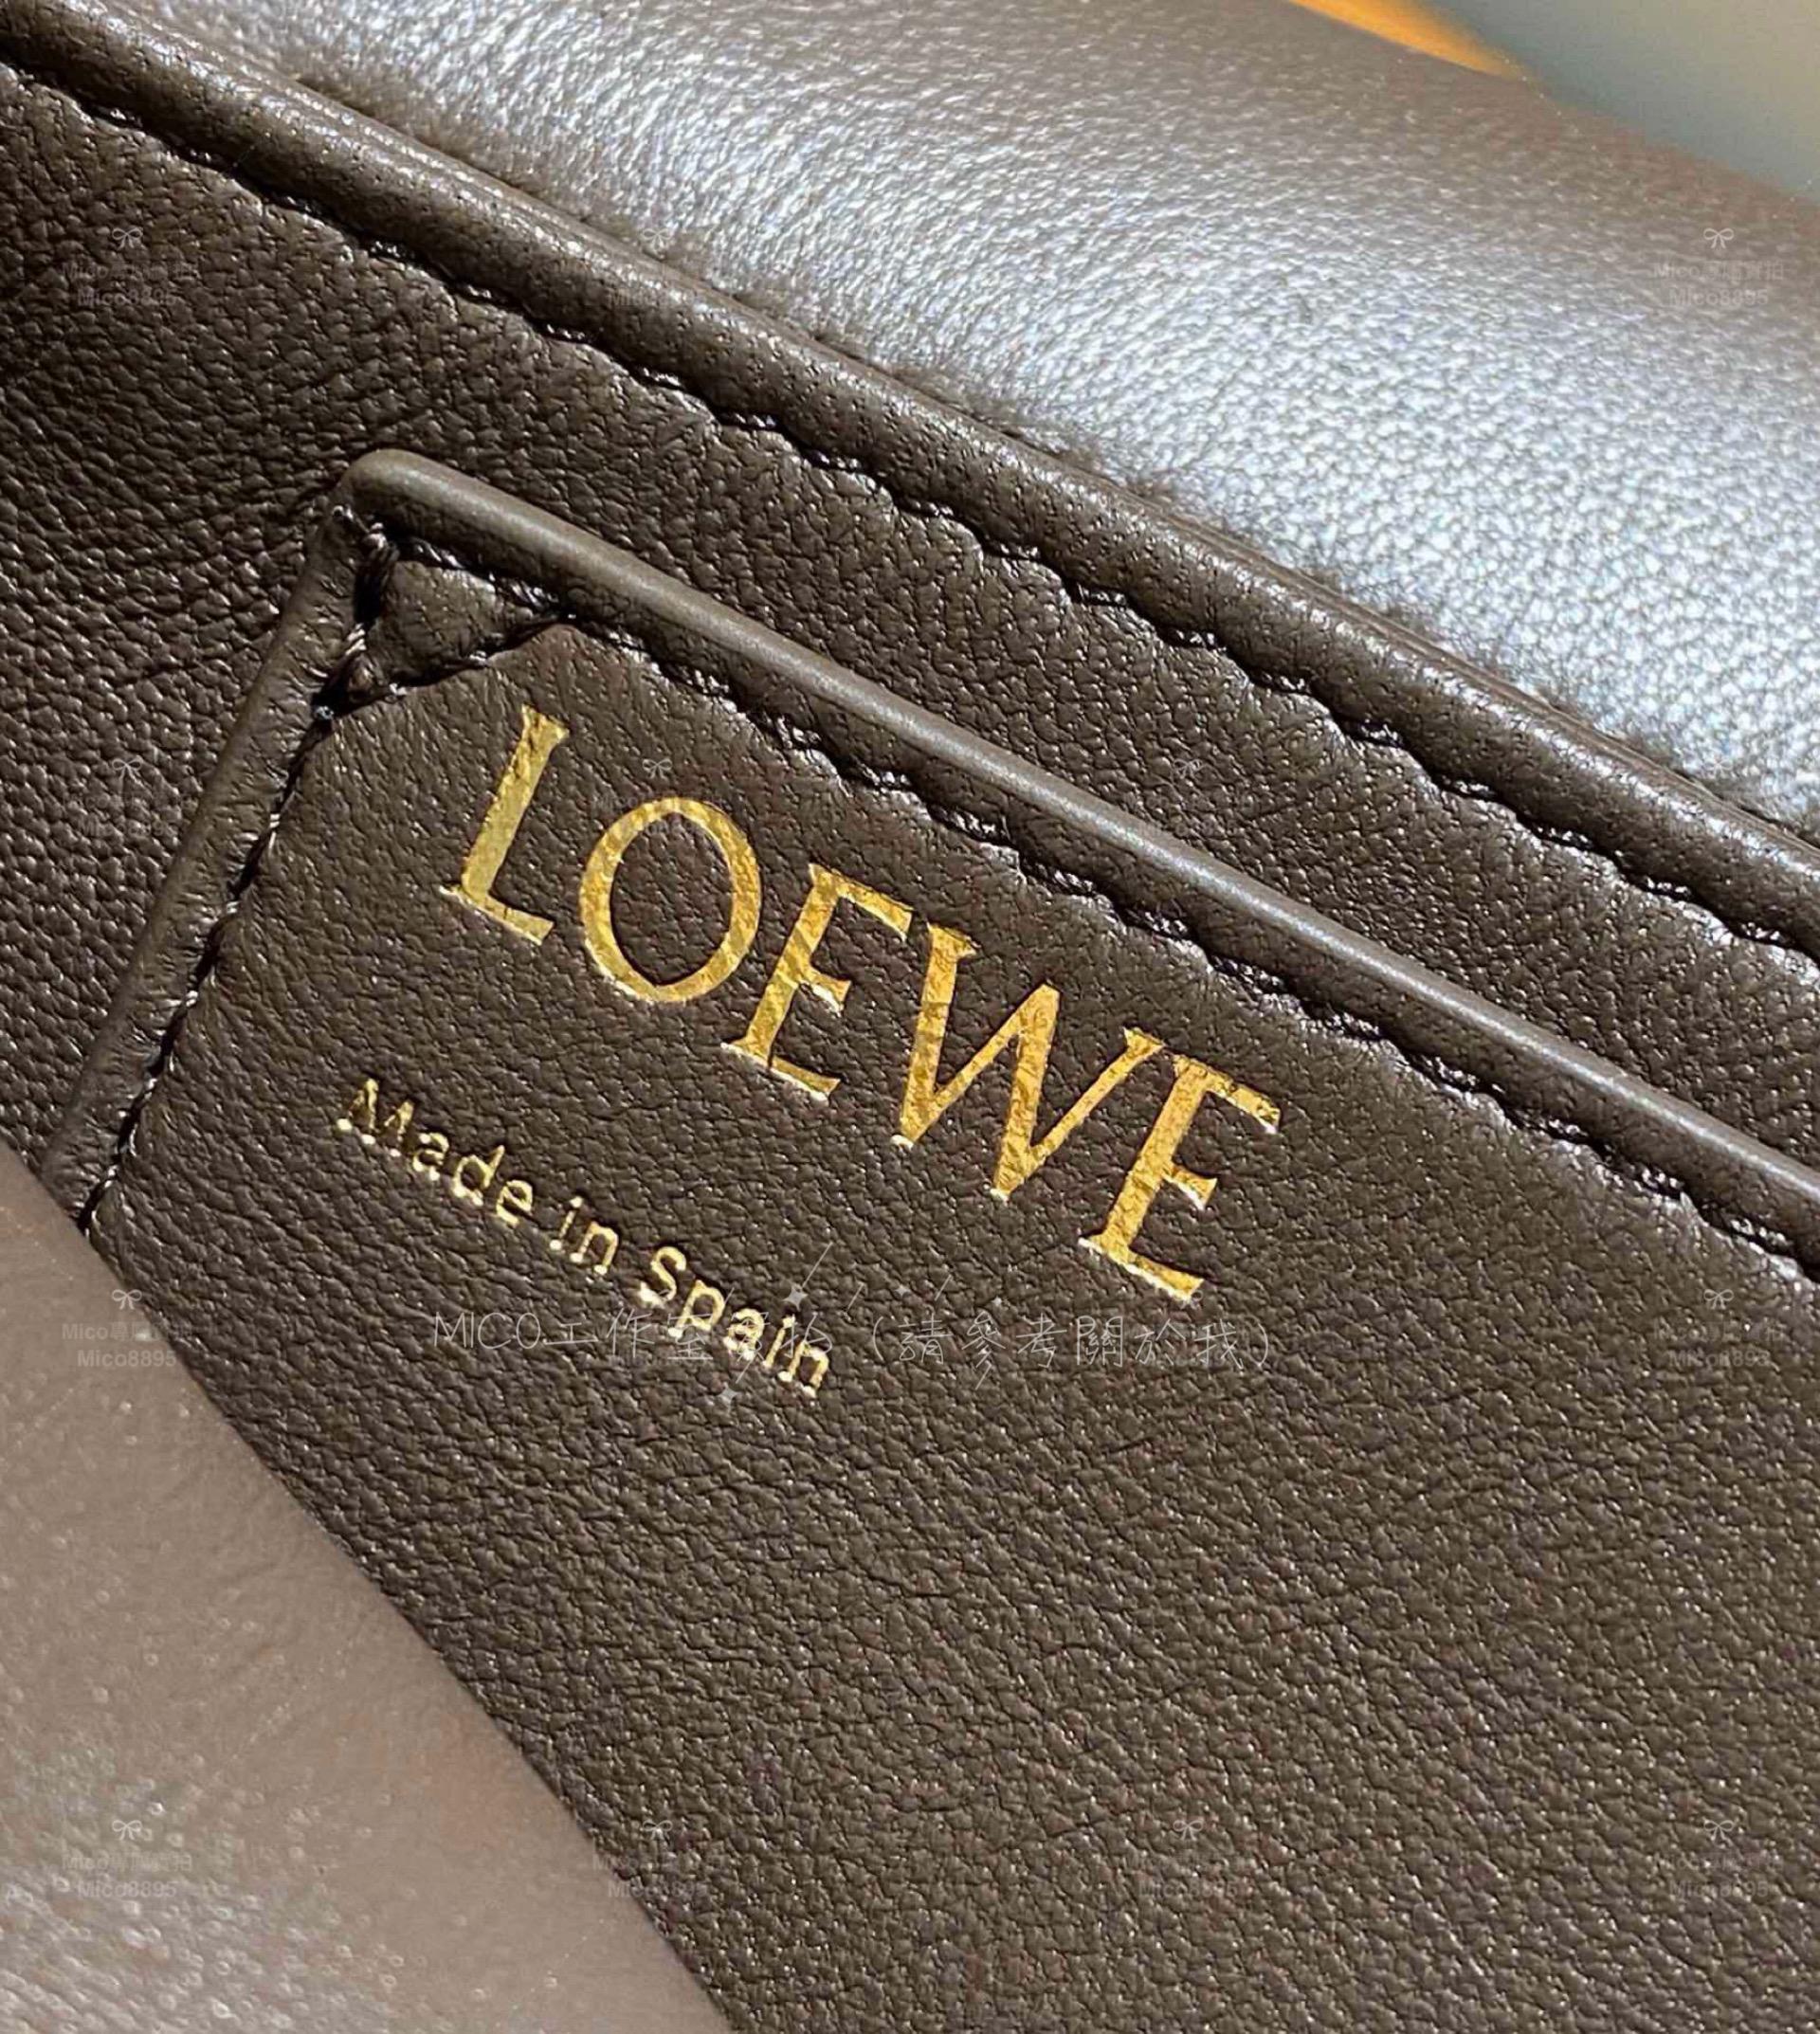 Loewe 納帕羊皮革 巧克力色 Puffer Goya手袋 枕頭包/豆腐包 23cm